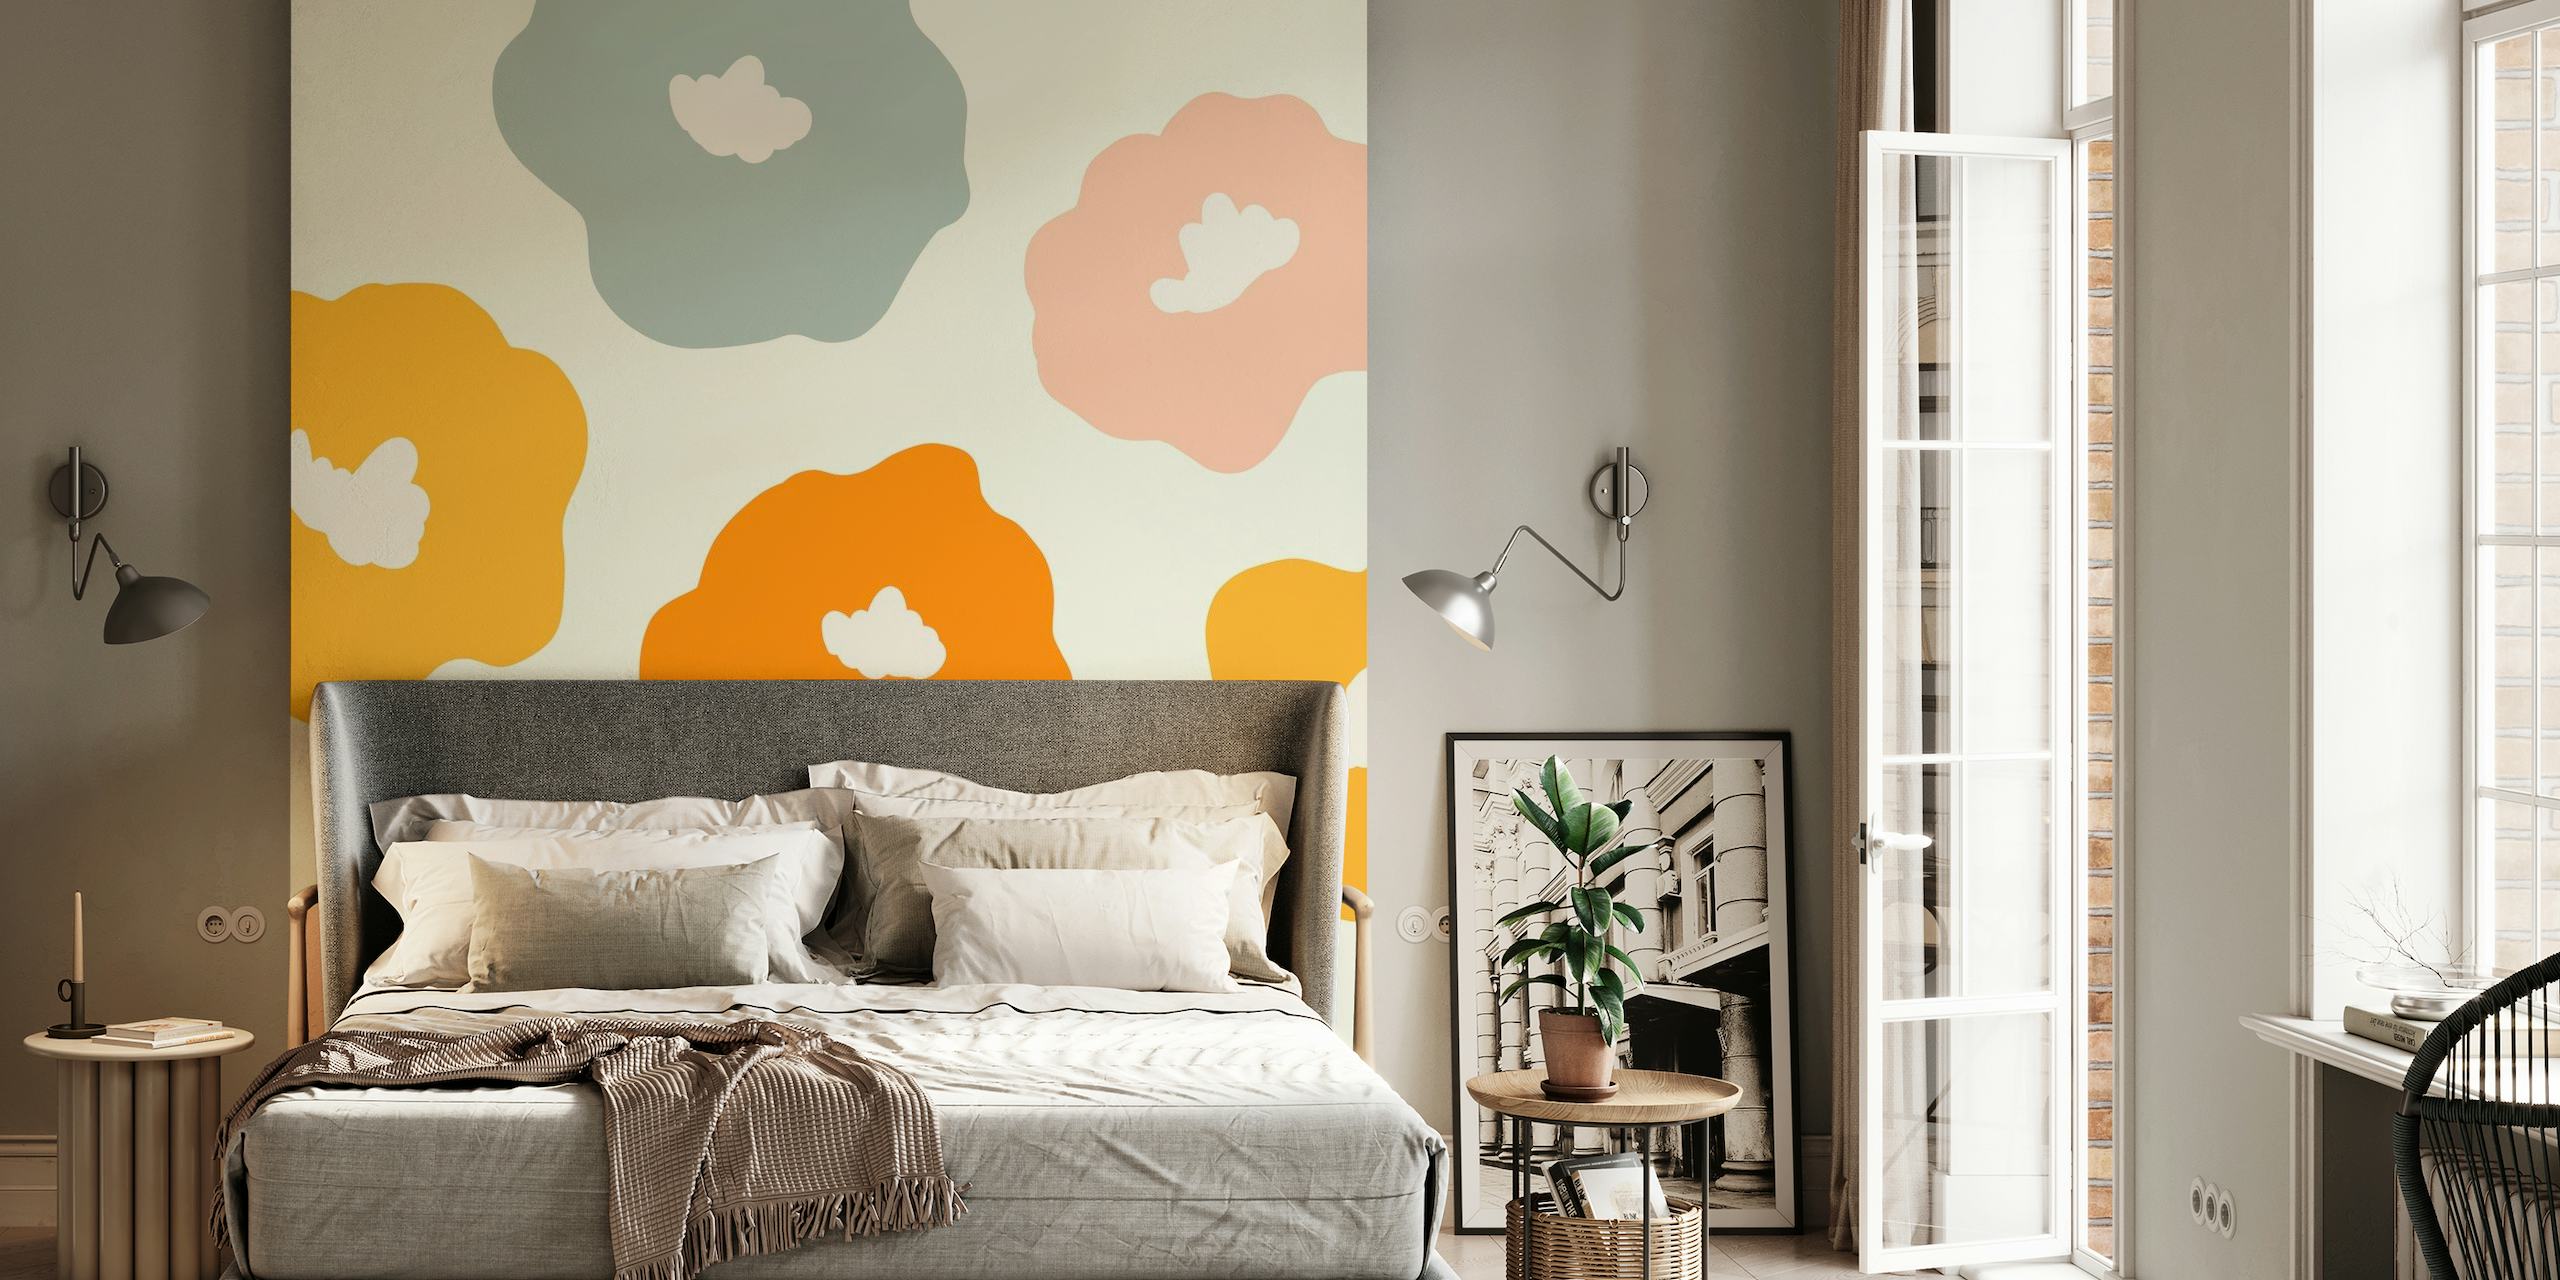 Colorido estampado floral de estilo retro en un mural de pared para diseño de interiores